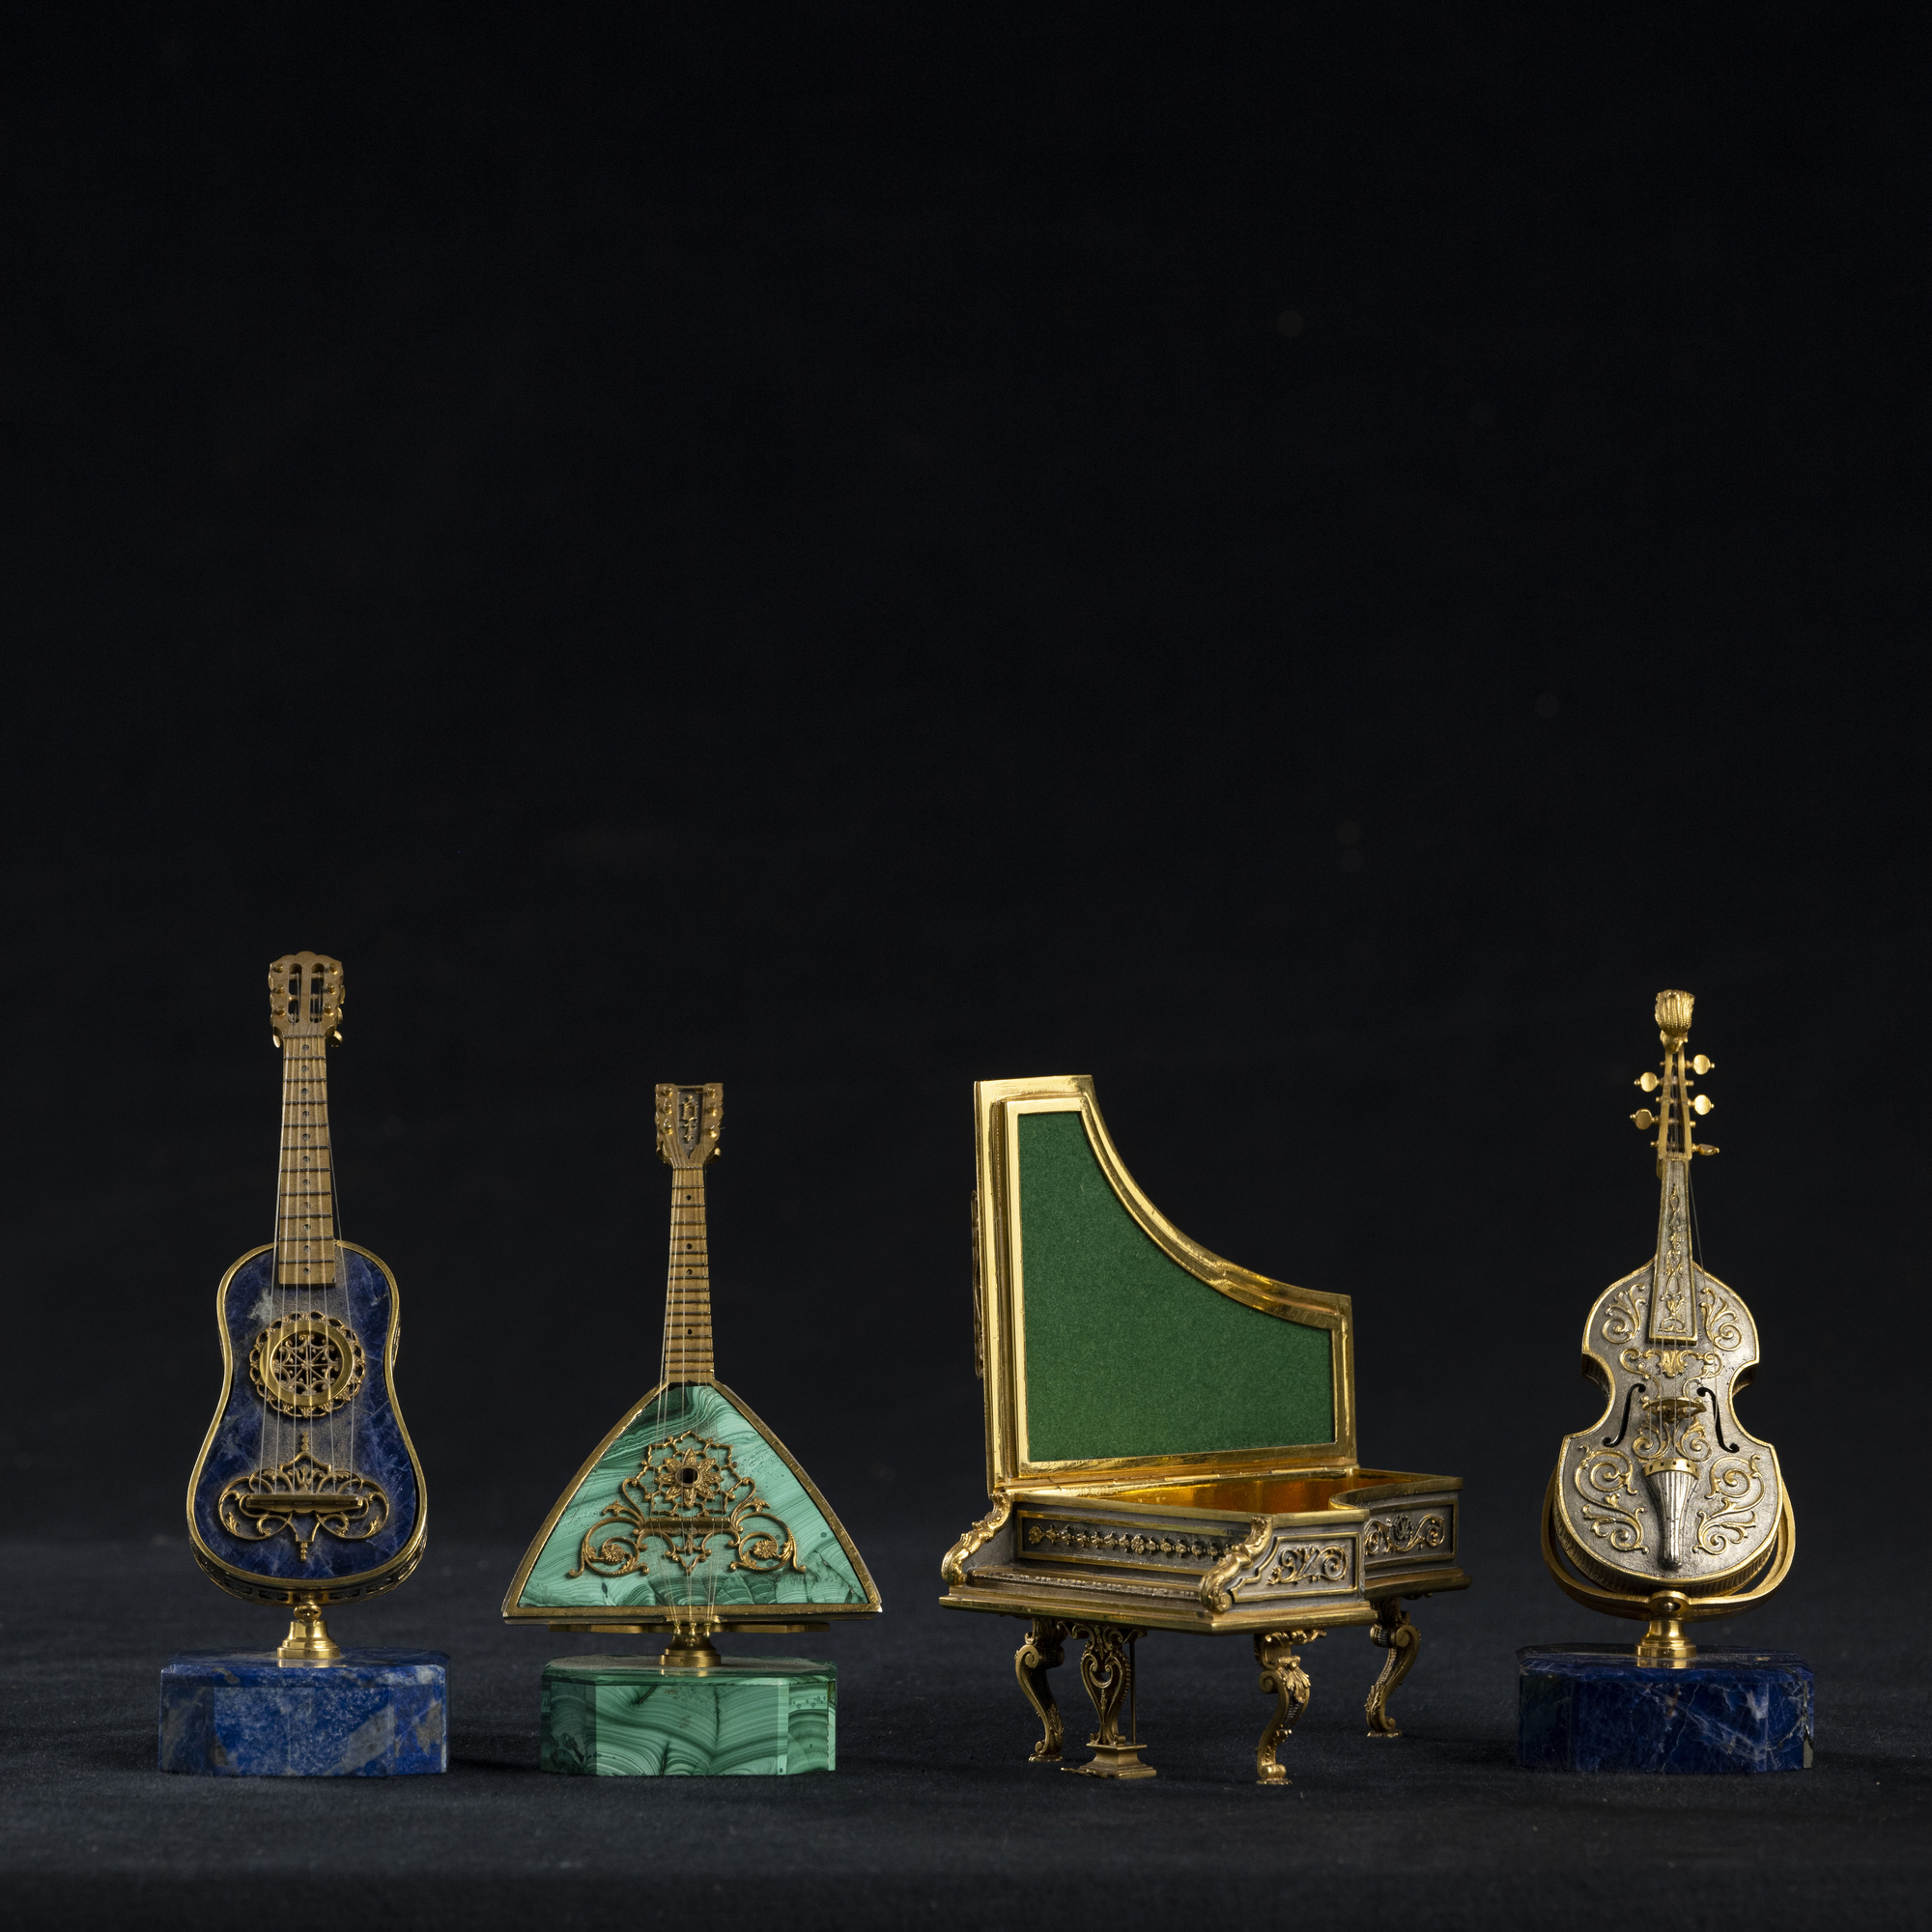 Gruppo di quattro strumenti musicali